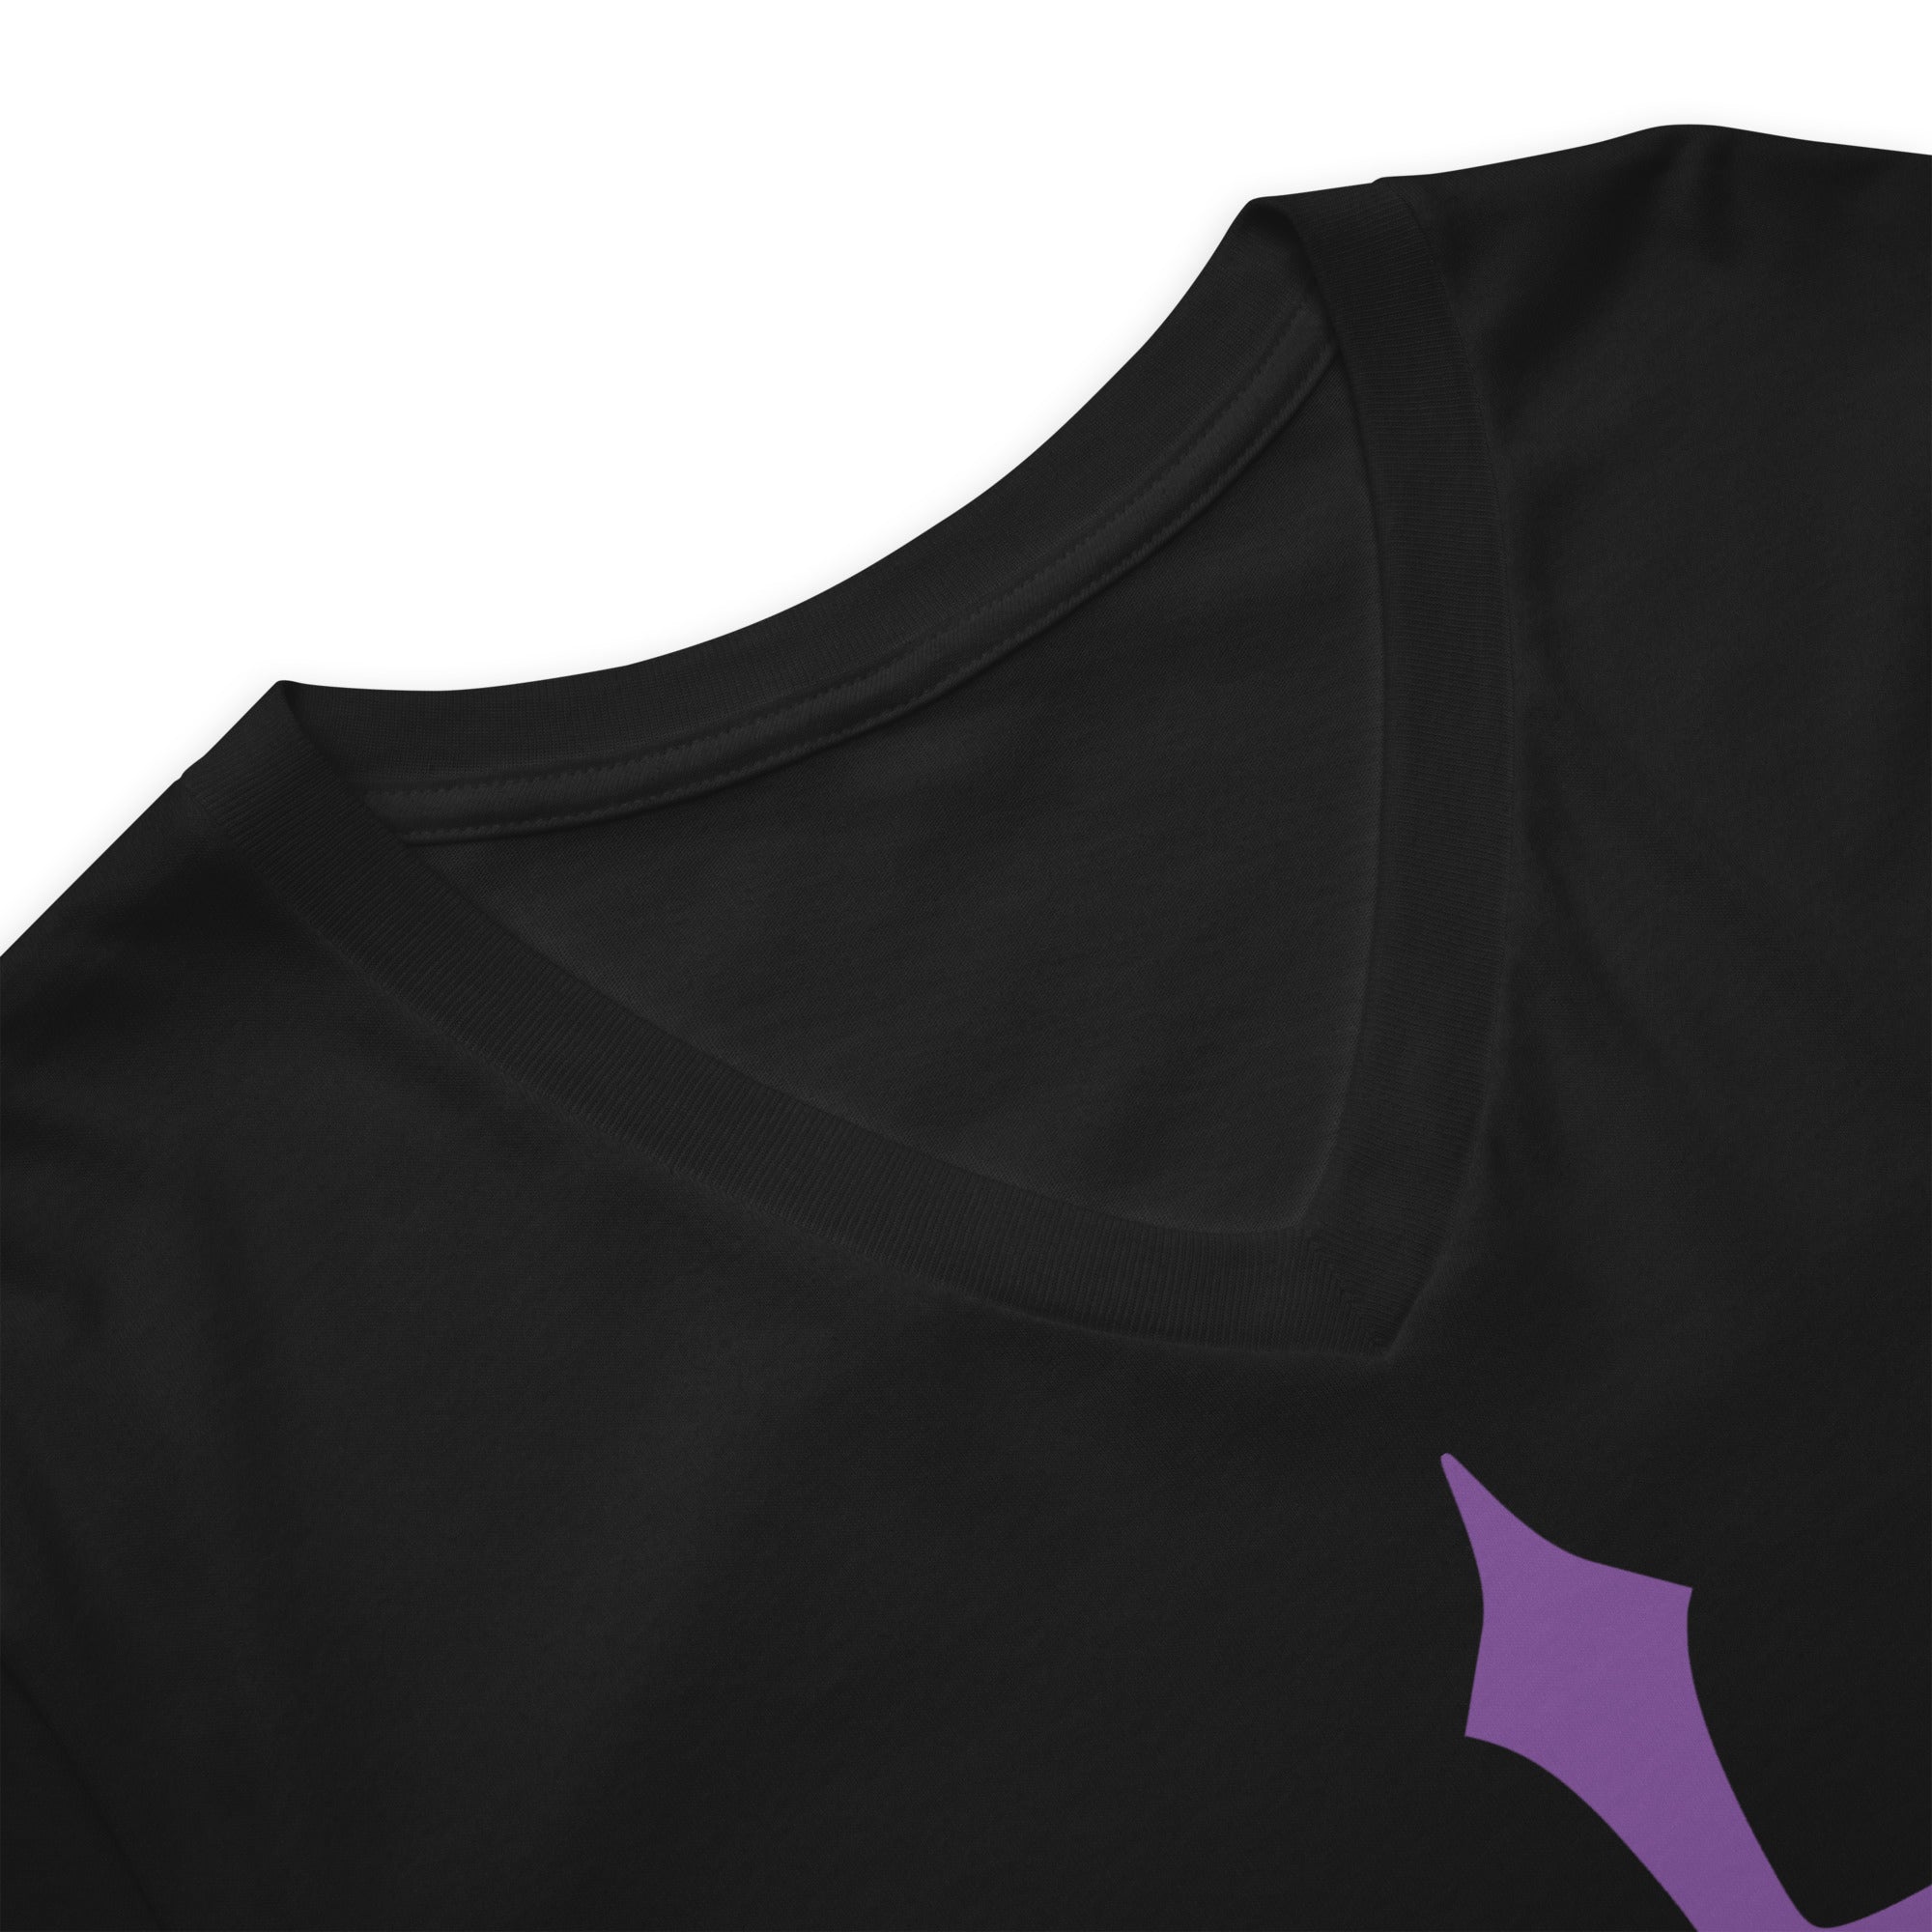 Purple Gothic Medeival Holy Cross Women’s Short Sleeve V-Neck T-Shirt